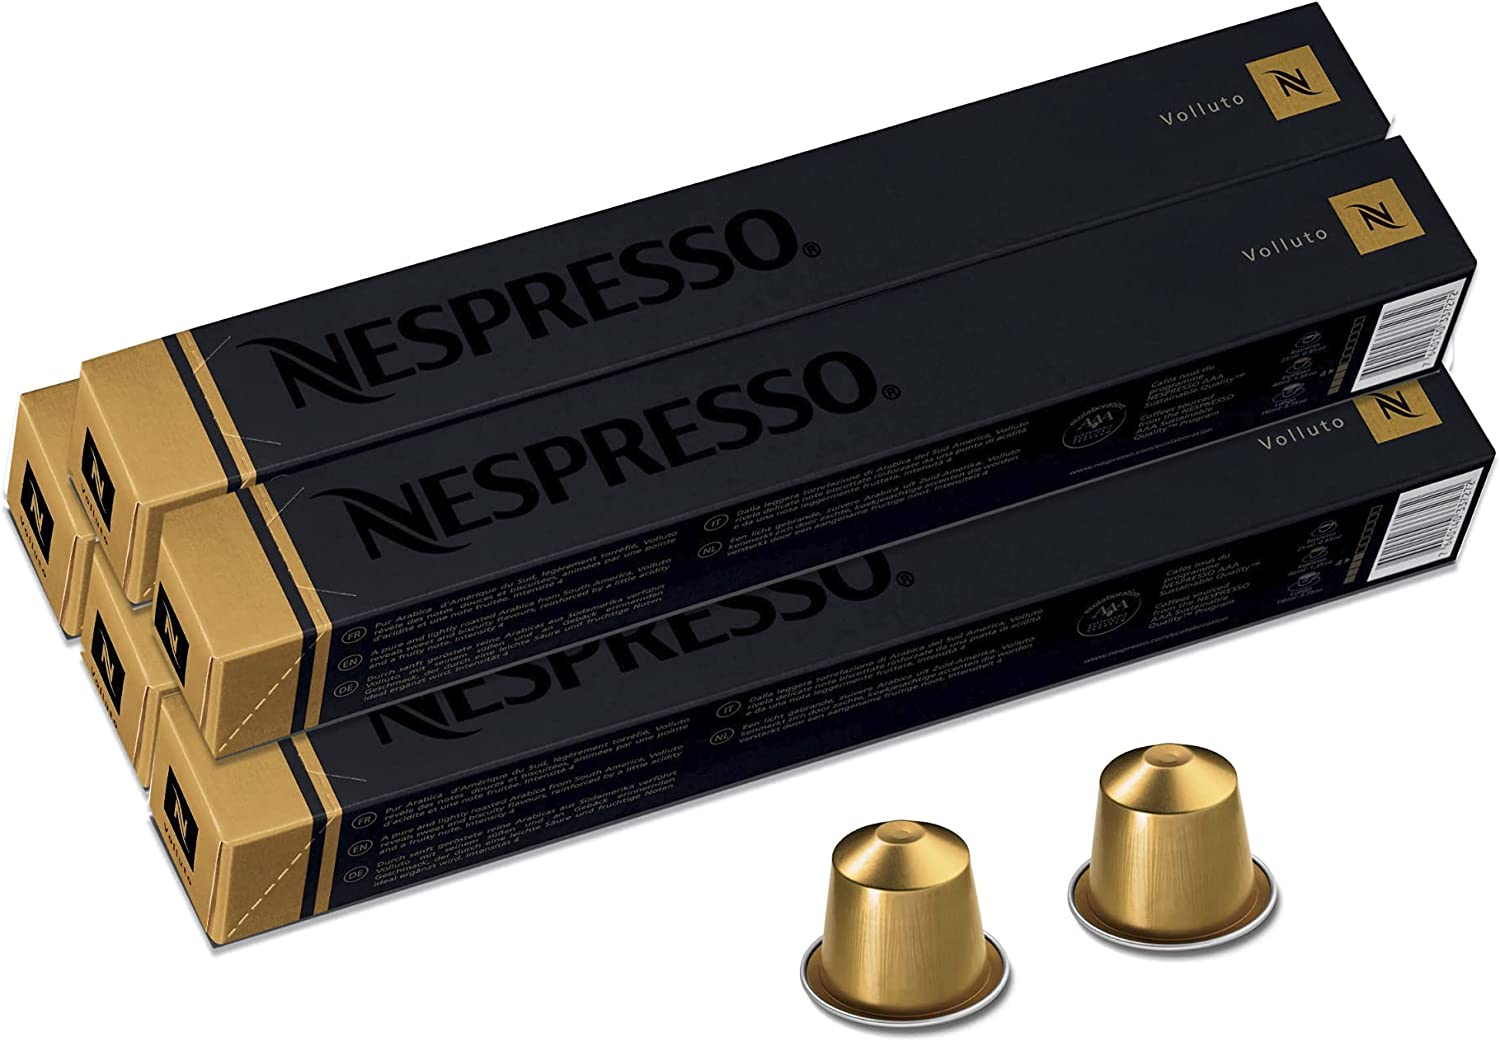 Nespresso Original – 50 Capsules Volluto